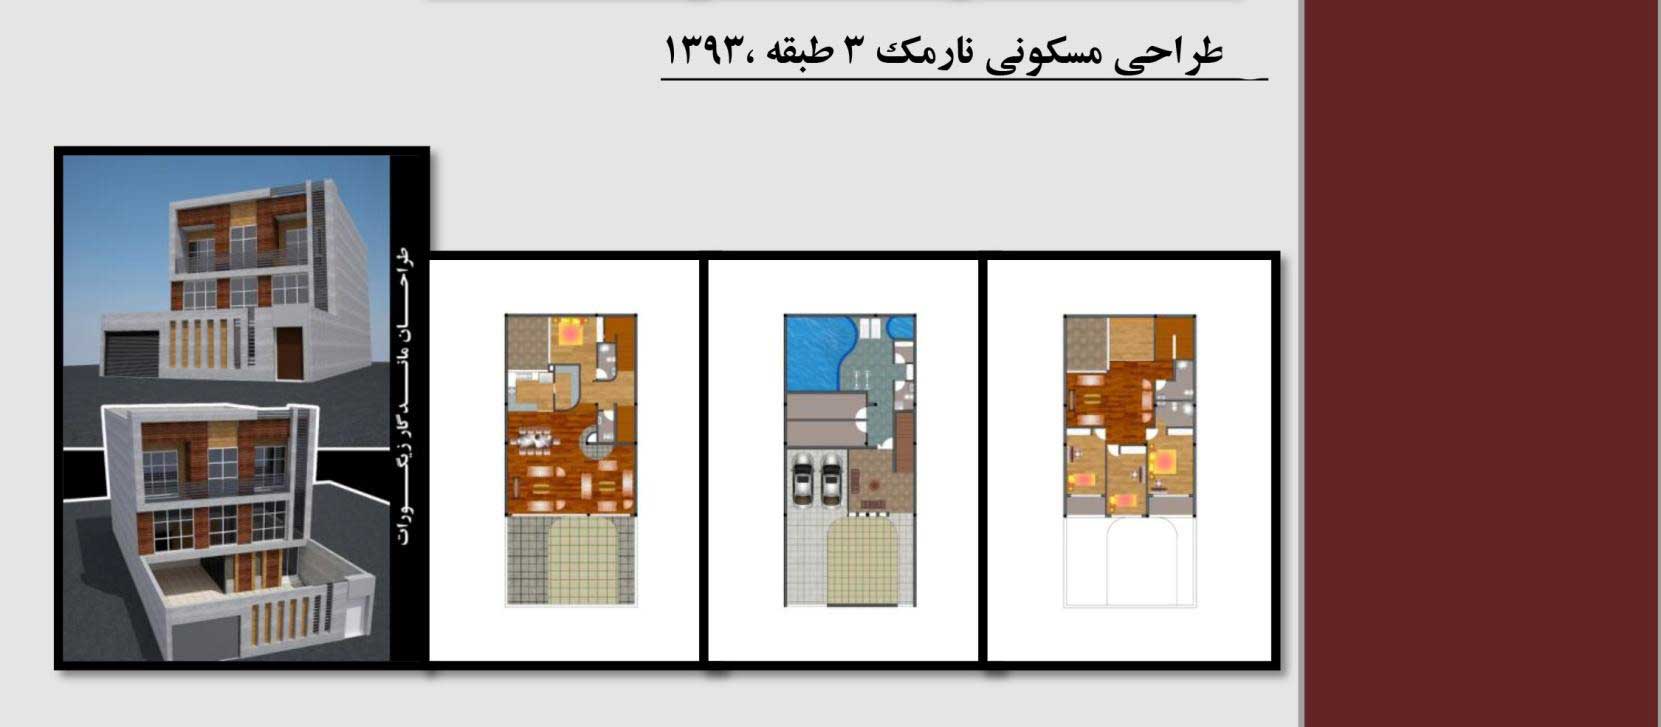 طراحی 3 طبقه مسکونی در نارمک